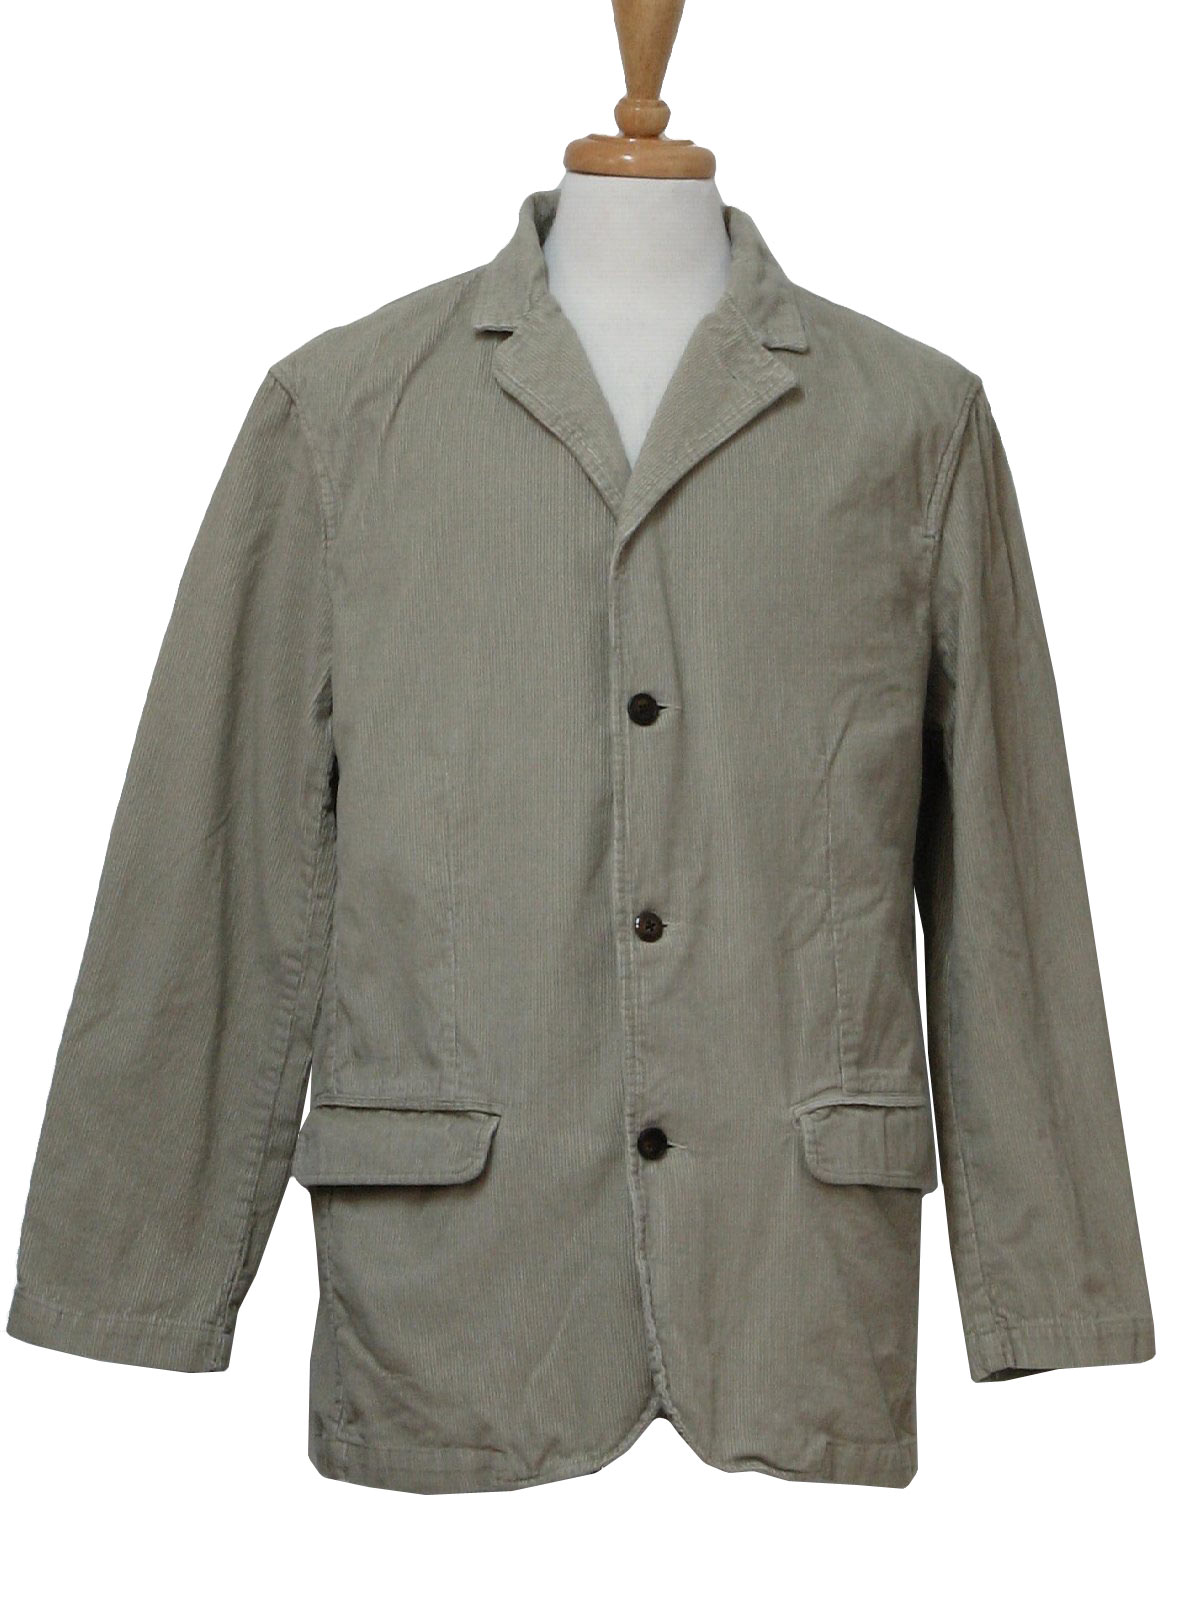 Retro Eighties Jacket: 80s -Sonoma Lifestyle- Unisex fawn cotton ...